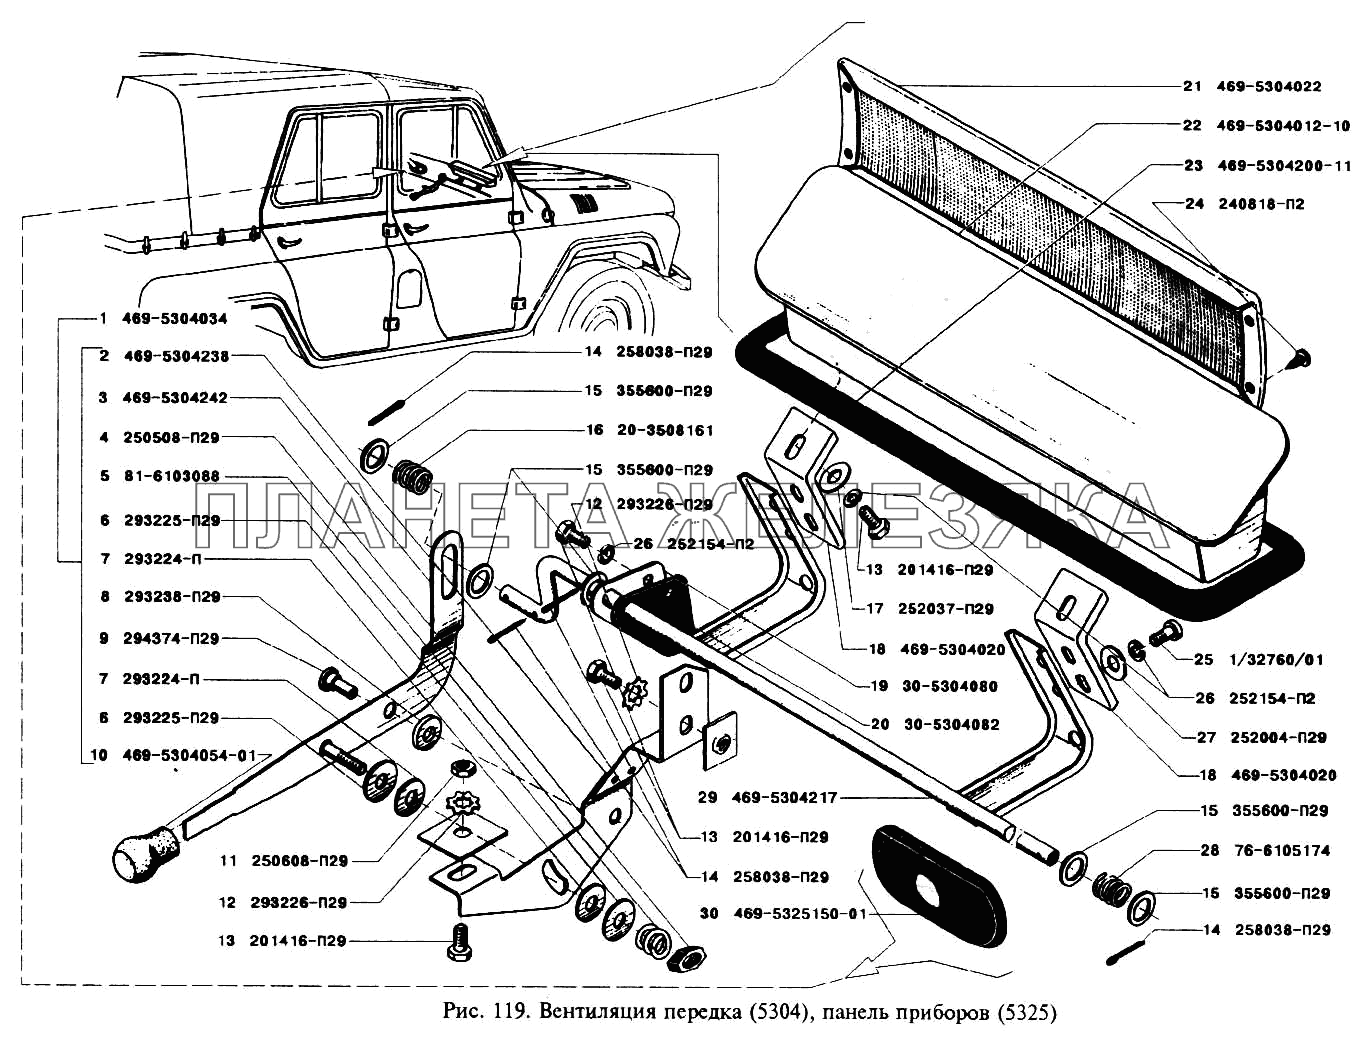 Вентиляция передка, панель приборов УАЗ-3151